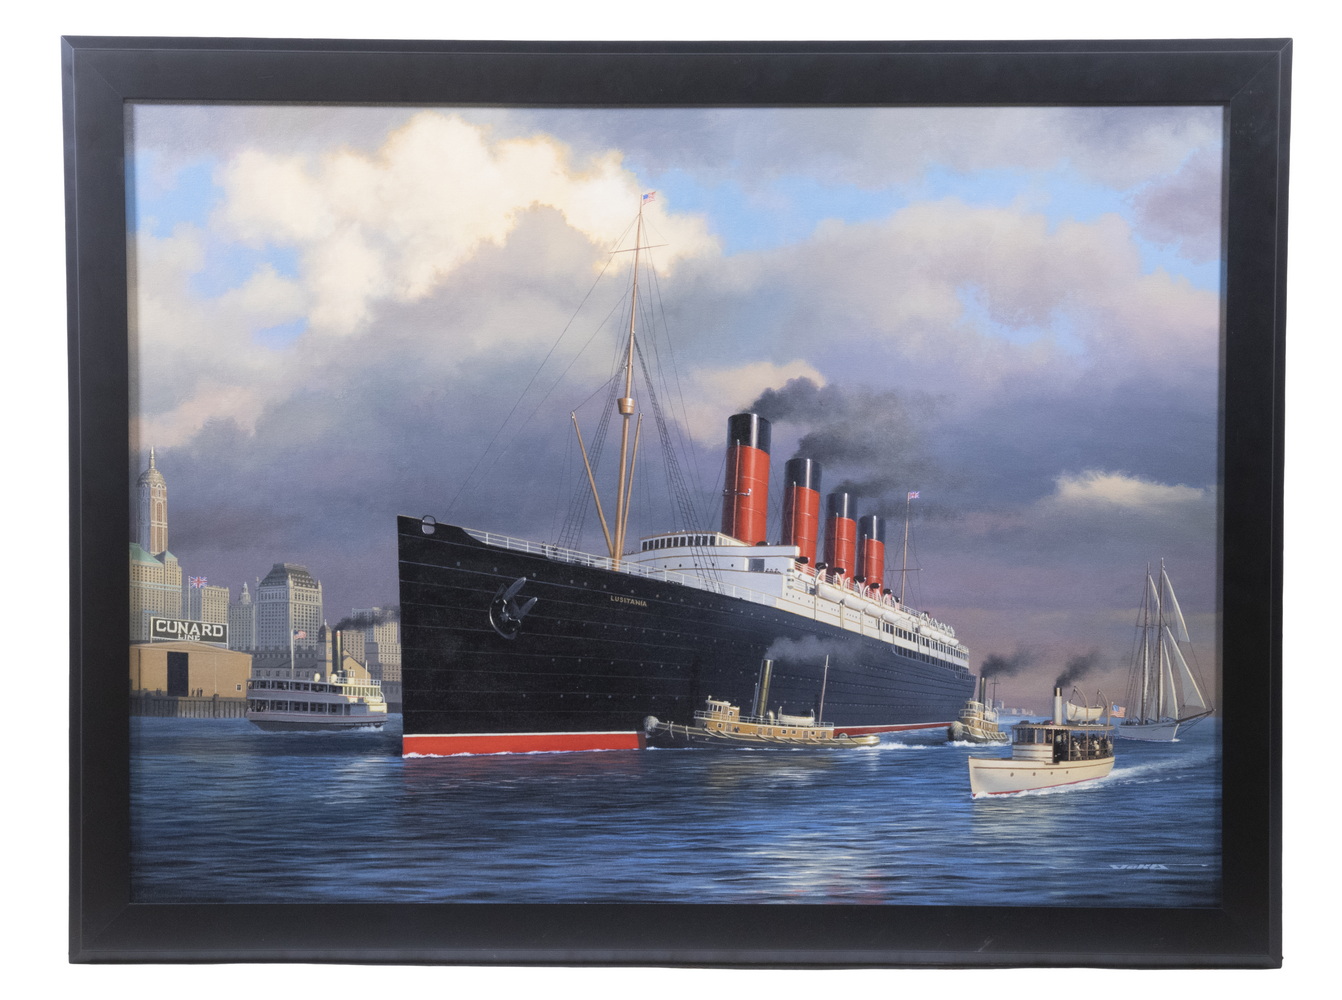 STAN STOKES (NY, 1950 - ) "Lusitania